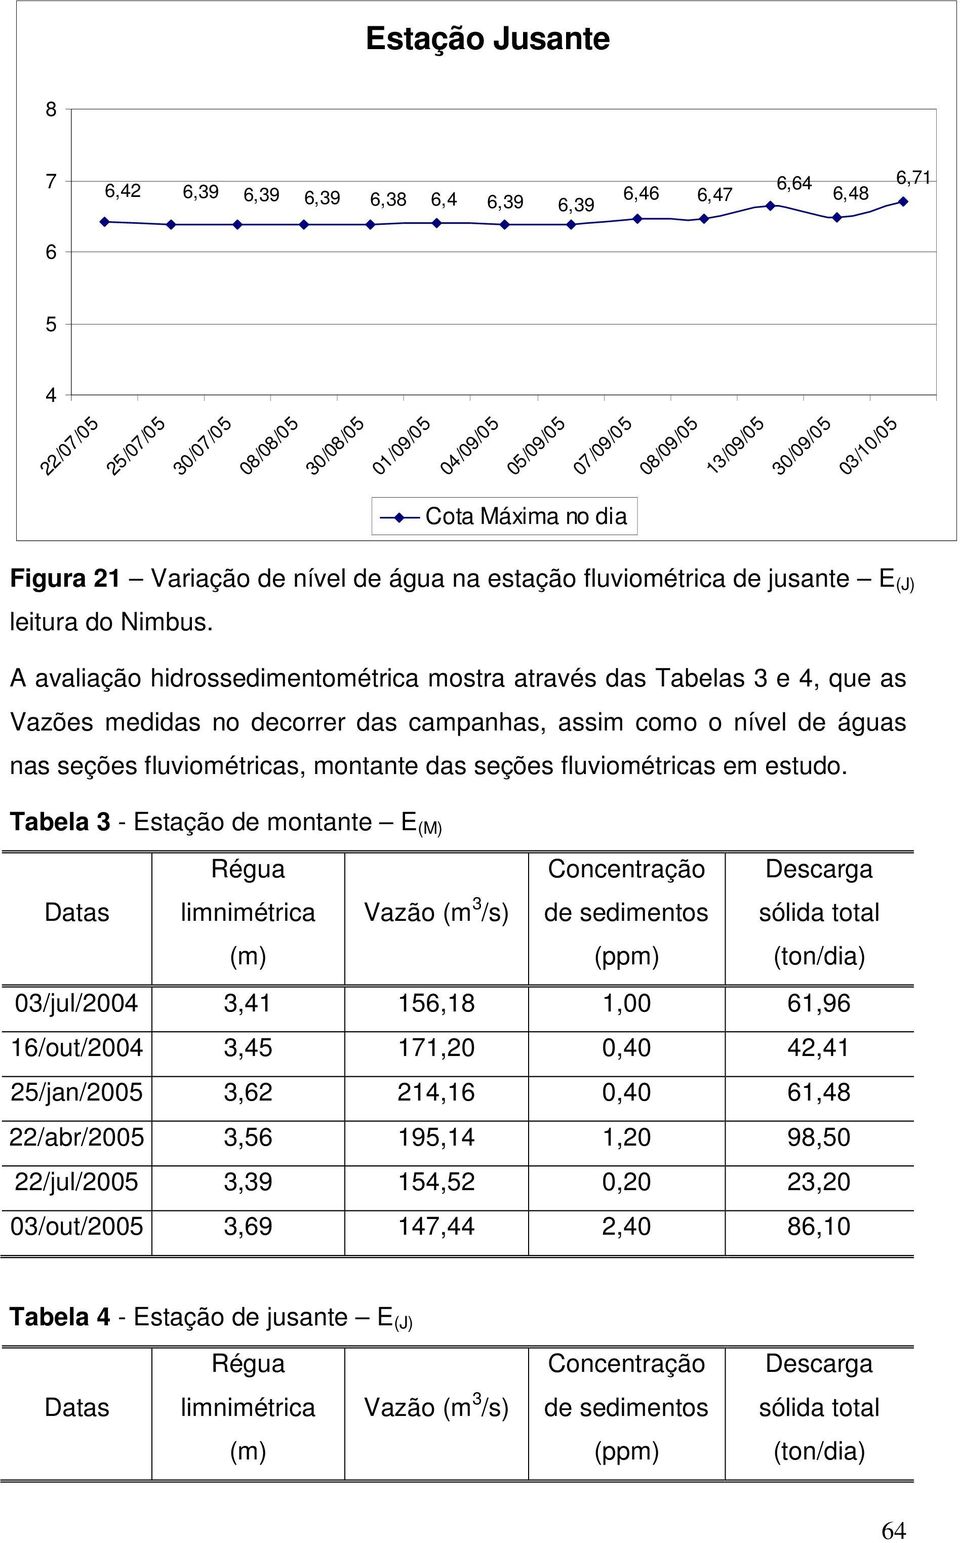 A avaliação hidrossedimentométrica mostra através das Tabelas 3 e 4, que as Vazões medidas no decorrer das campanhas, assim como o nível de águas nas seções fluviométricas, montante das seções